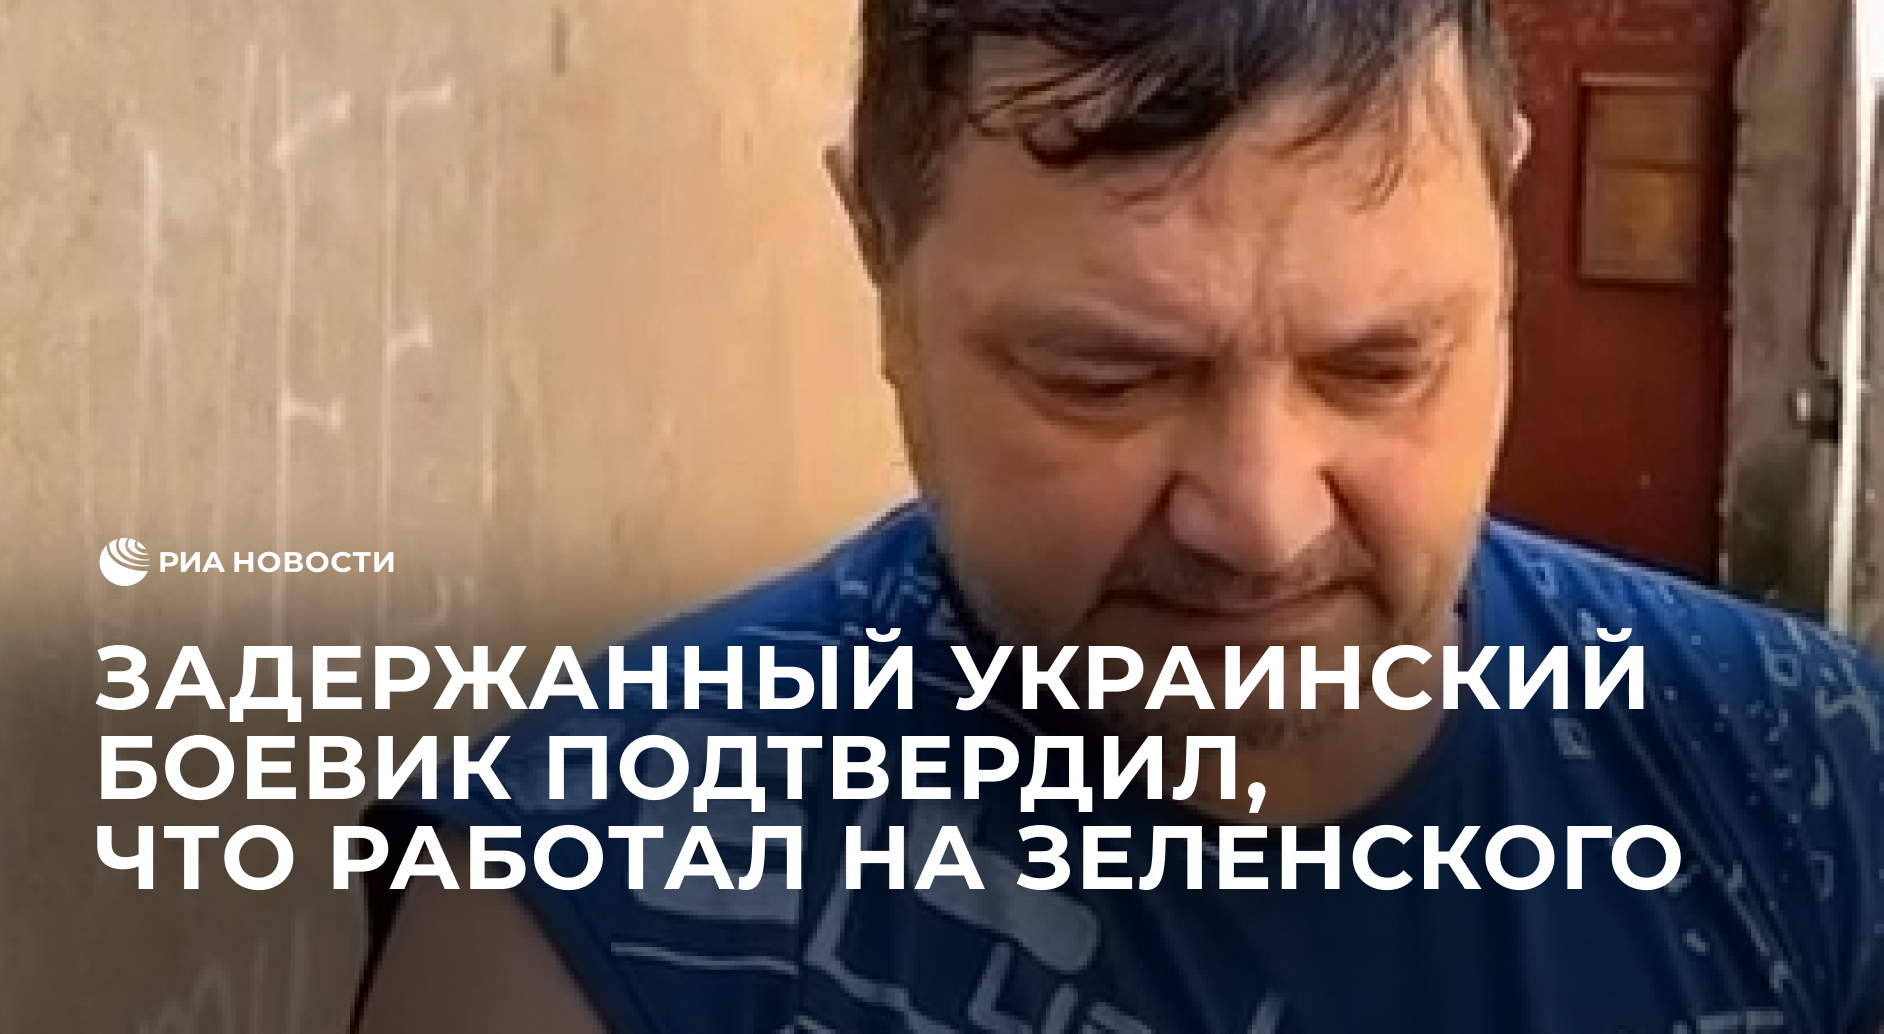 Задержанный украинский боевик подтвердил, что работал на Зеленского